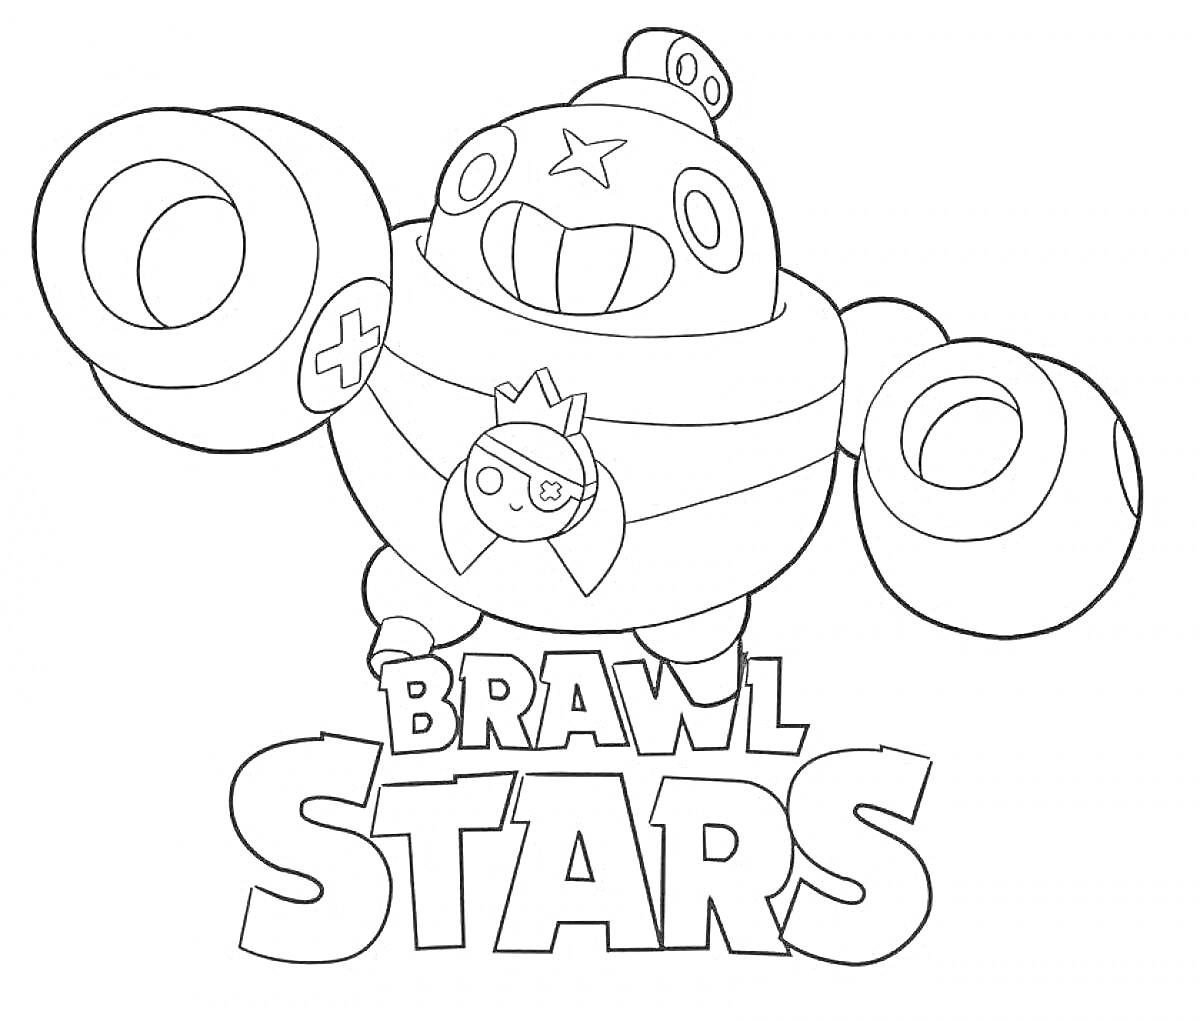 Раскраска Честер из Brawl Stars с большими руками-оружиями, надписью 